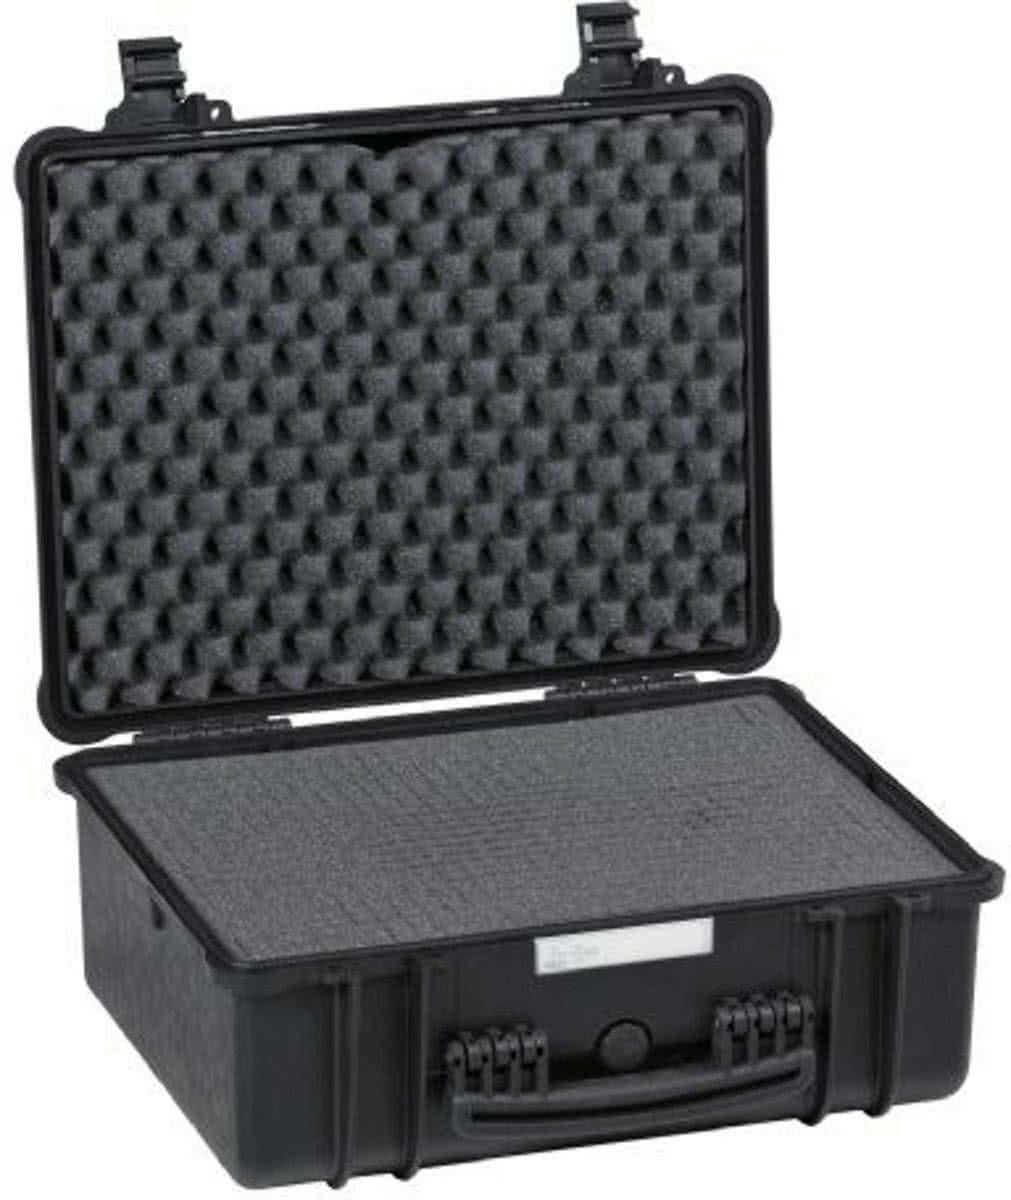 Explorer Cases 4820 Black Foam 520x435x230mm kufer za foto opremu kofer Camera Case